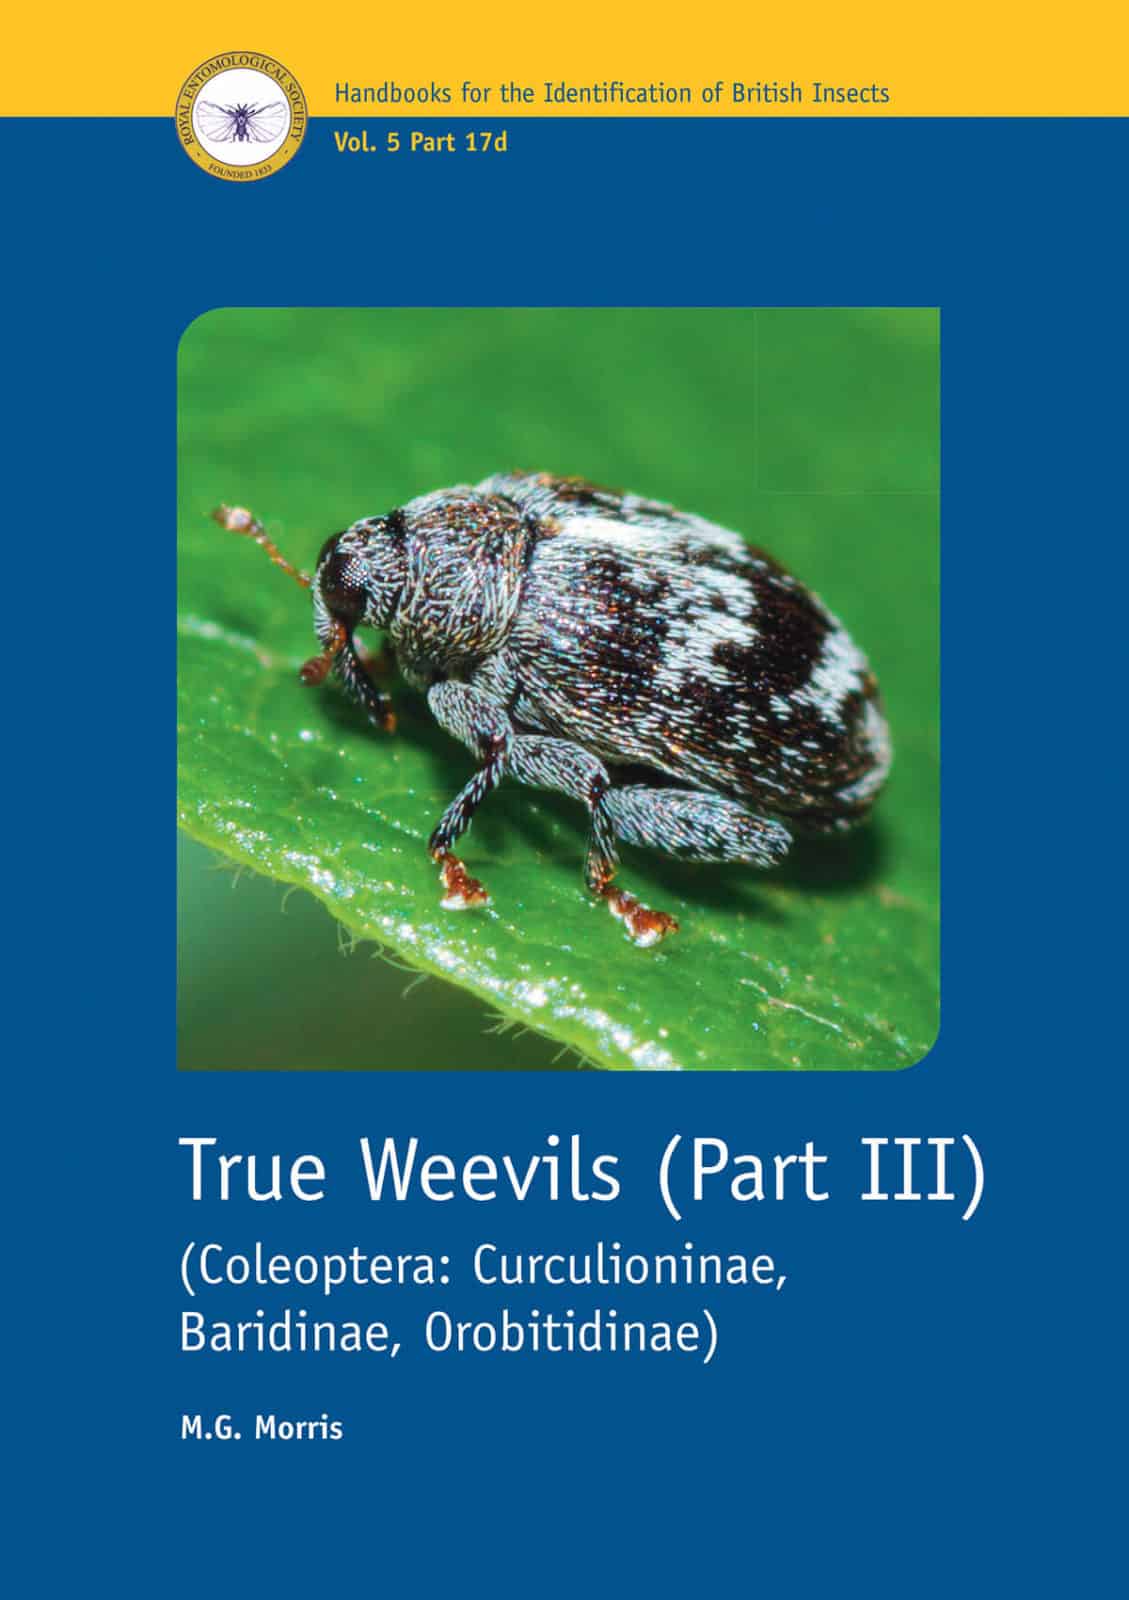 True weevils